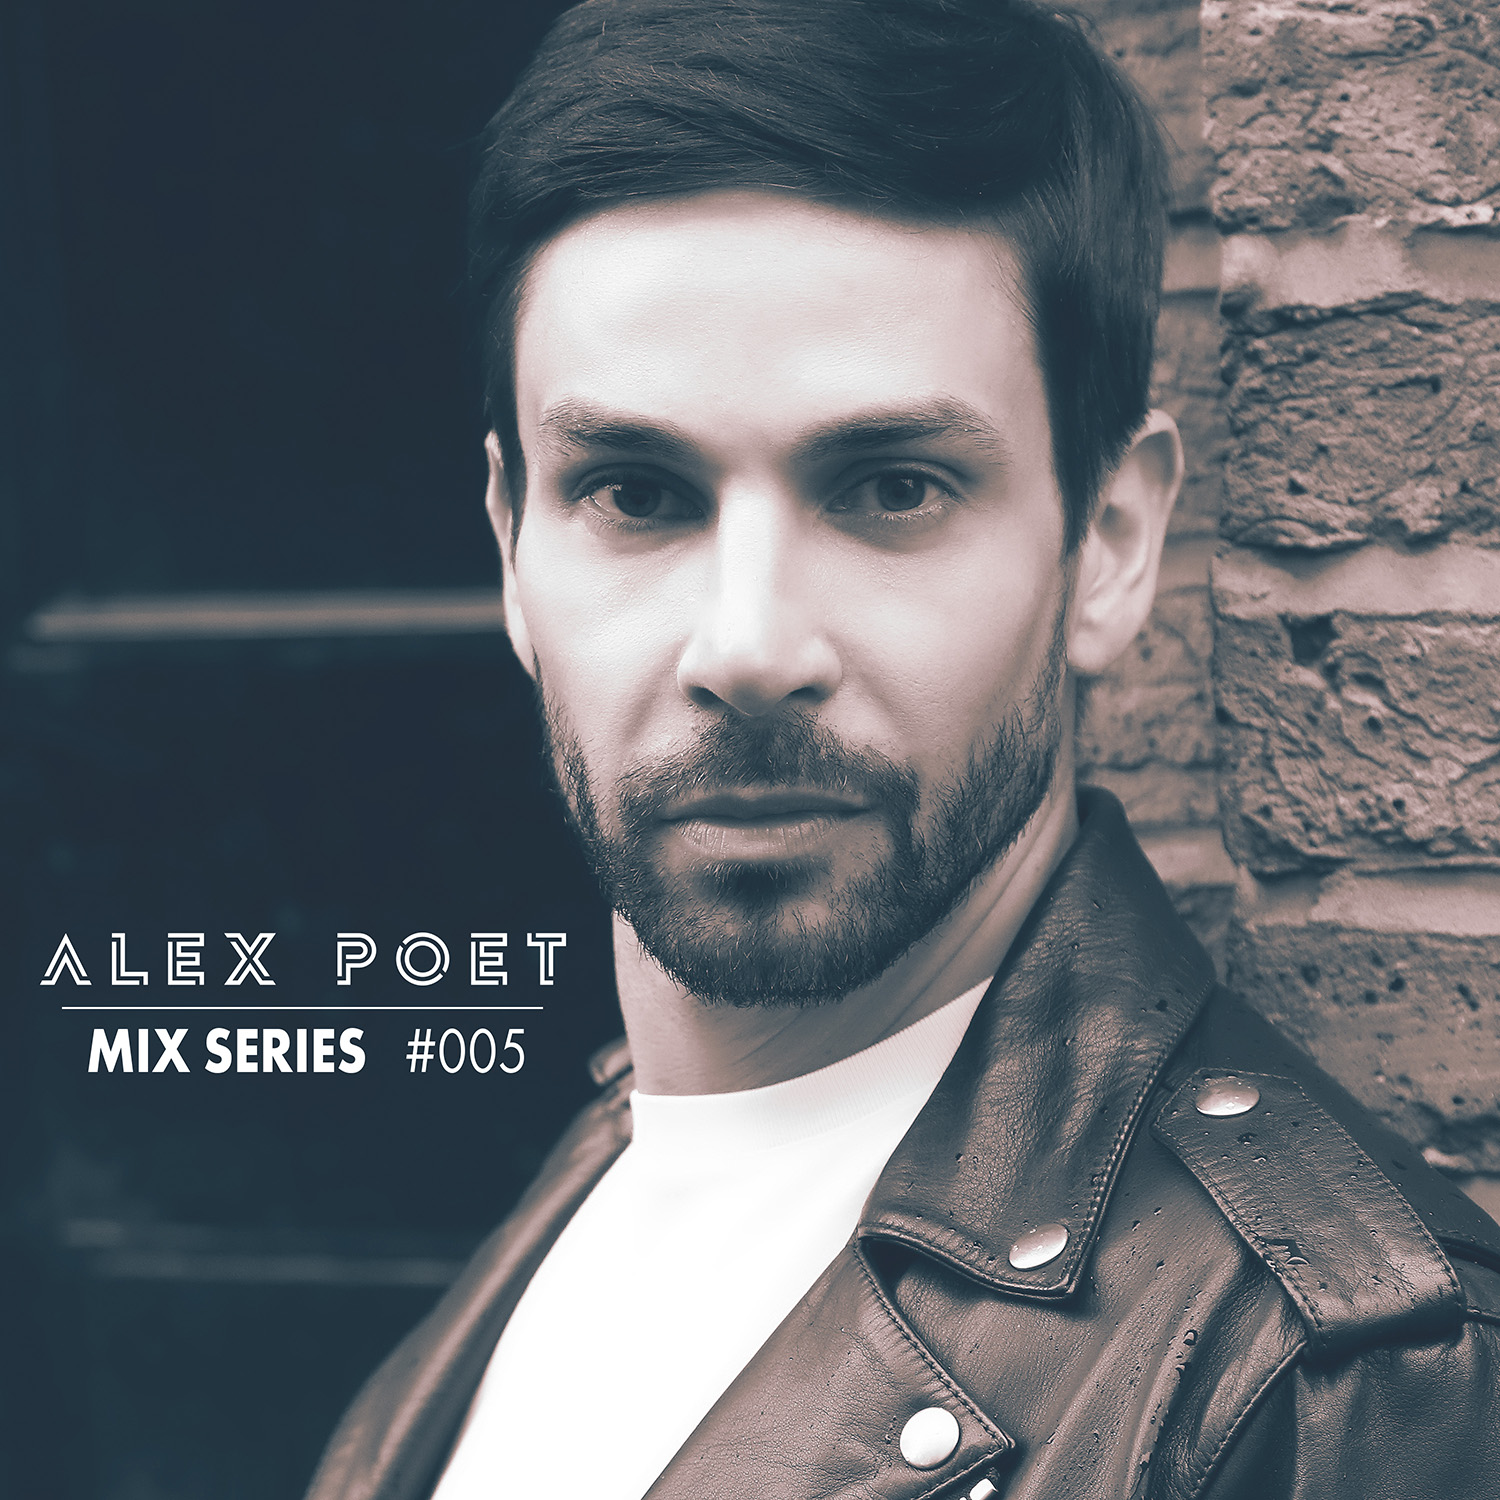 Alex Poet Mix Series #005